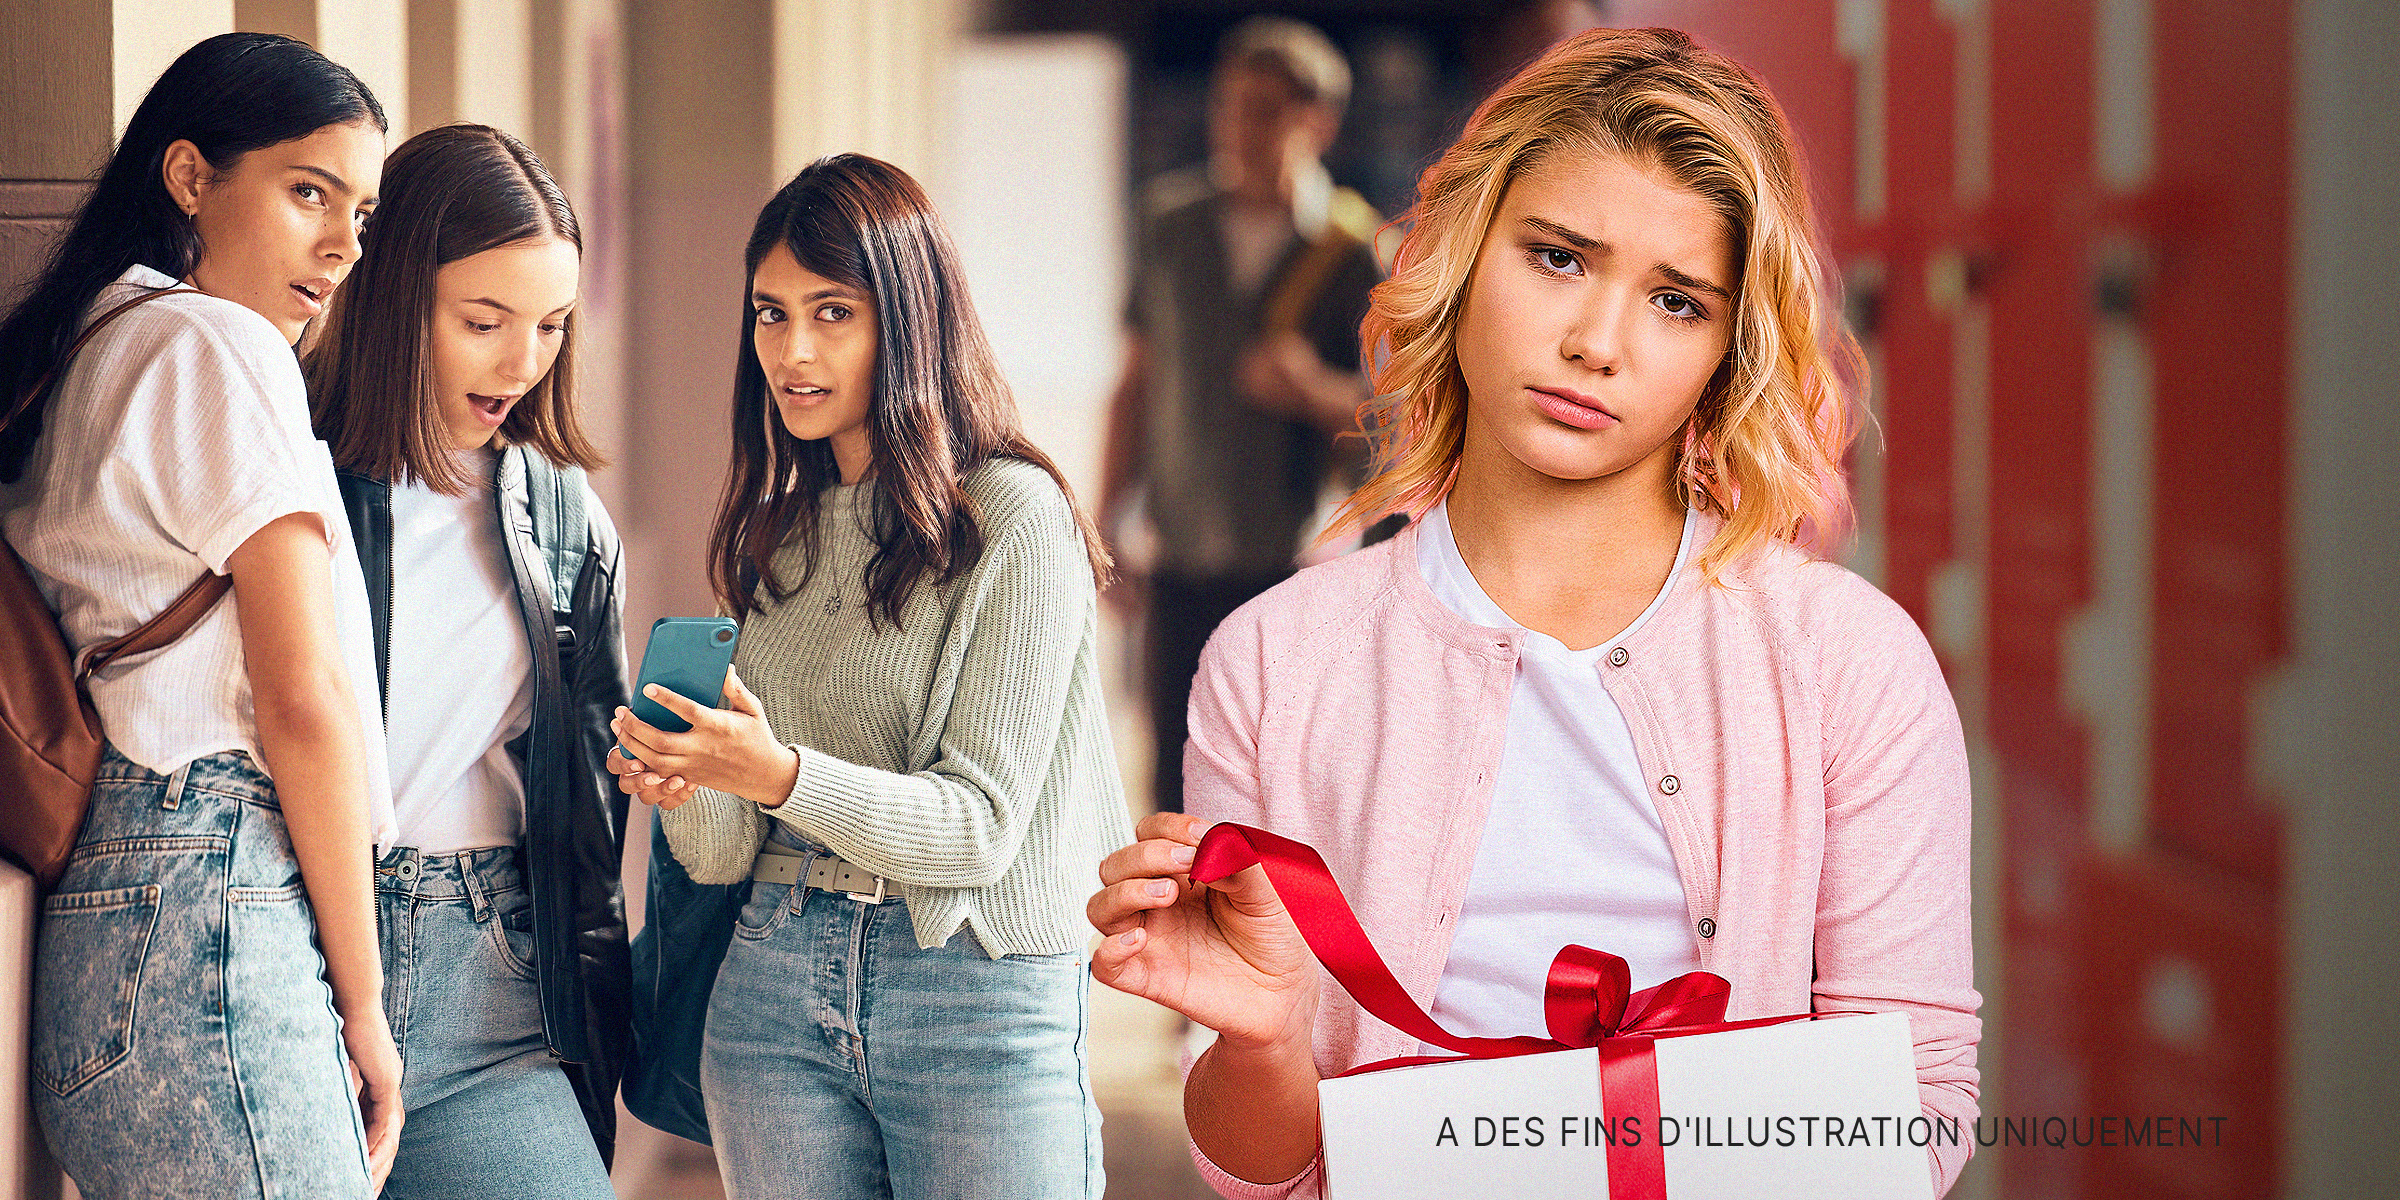 Trois filles regardant un téléphone surprises et une fille ouvrant un cadeau | Source : Shutterstock